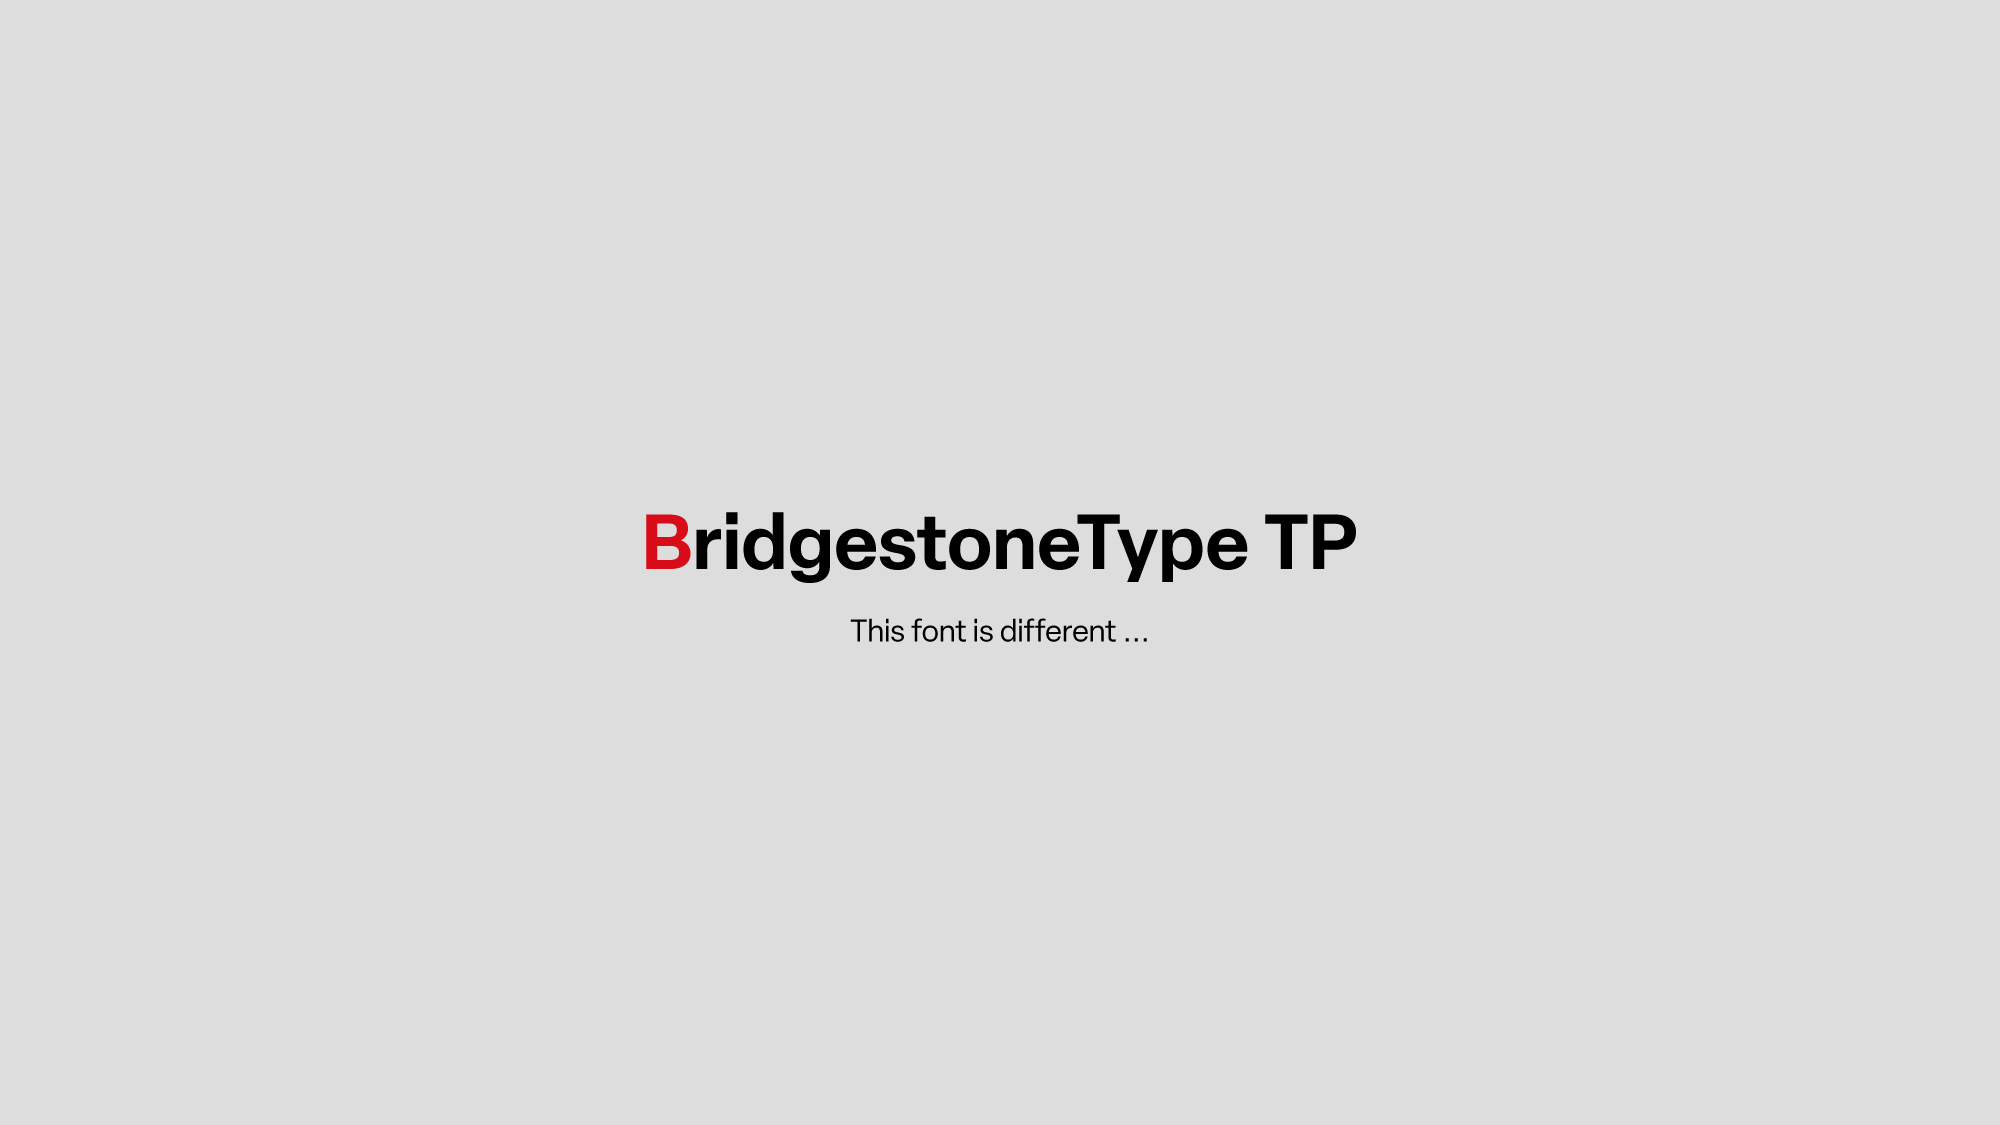 タイププロジェクト、ブリヂストンに和文コーポレートフォント「BridgestoneType TP」を提供